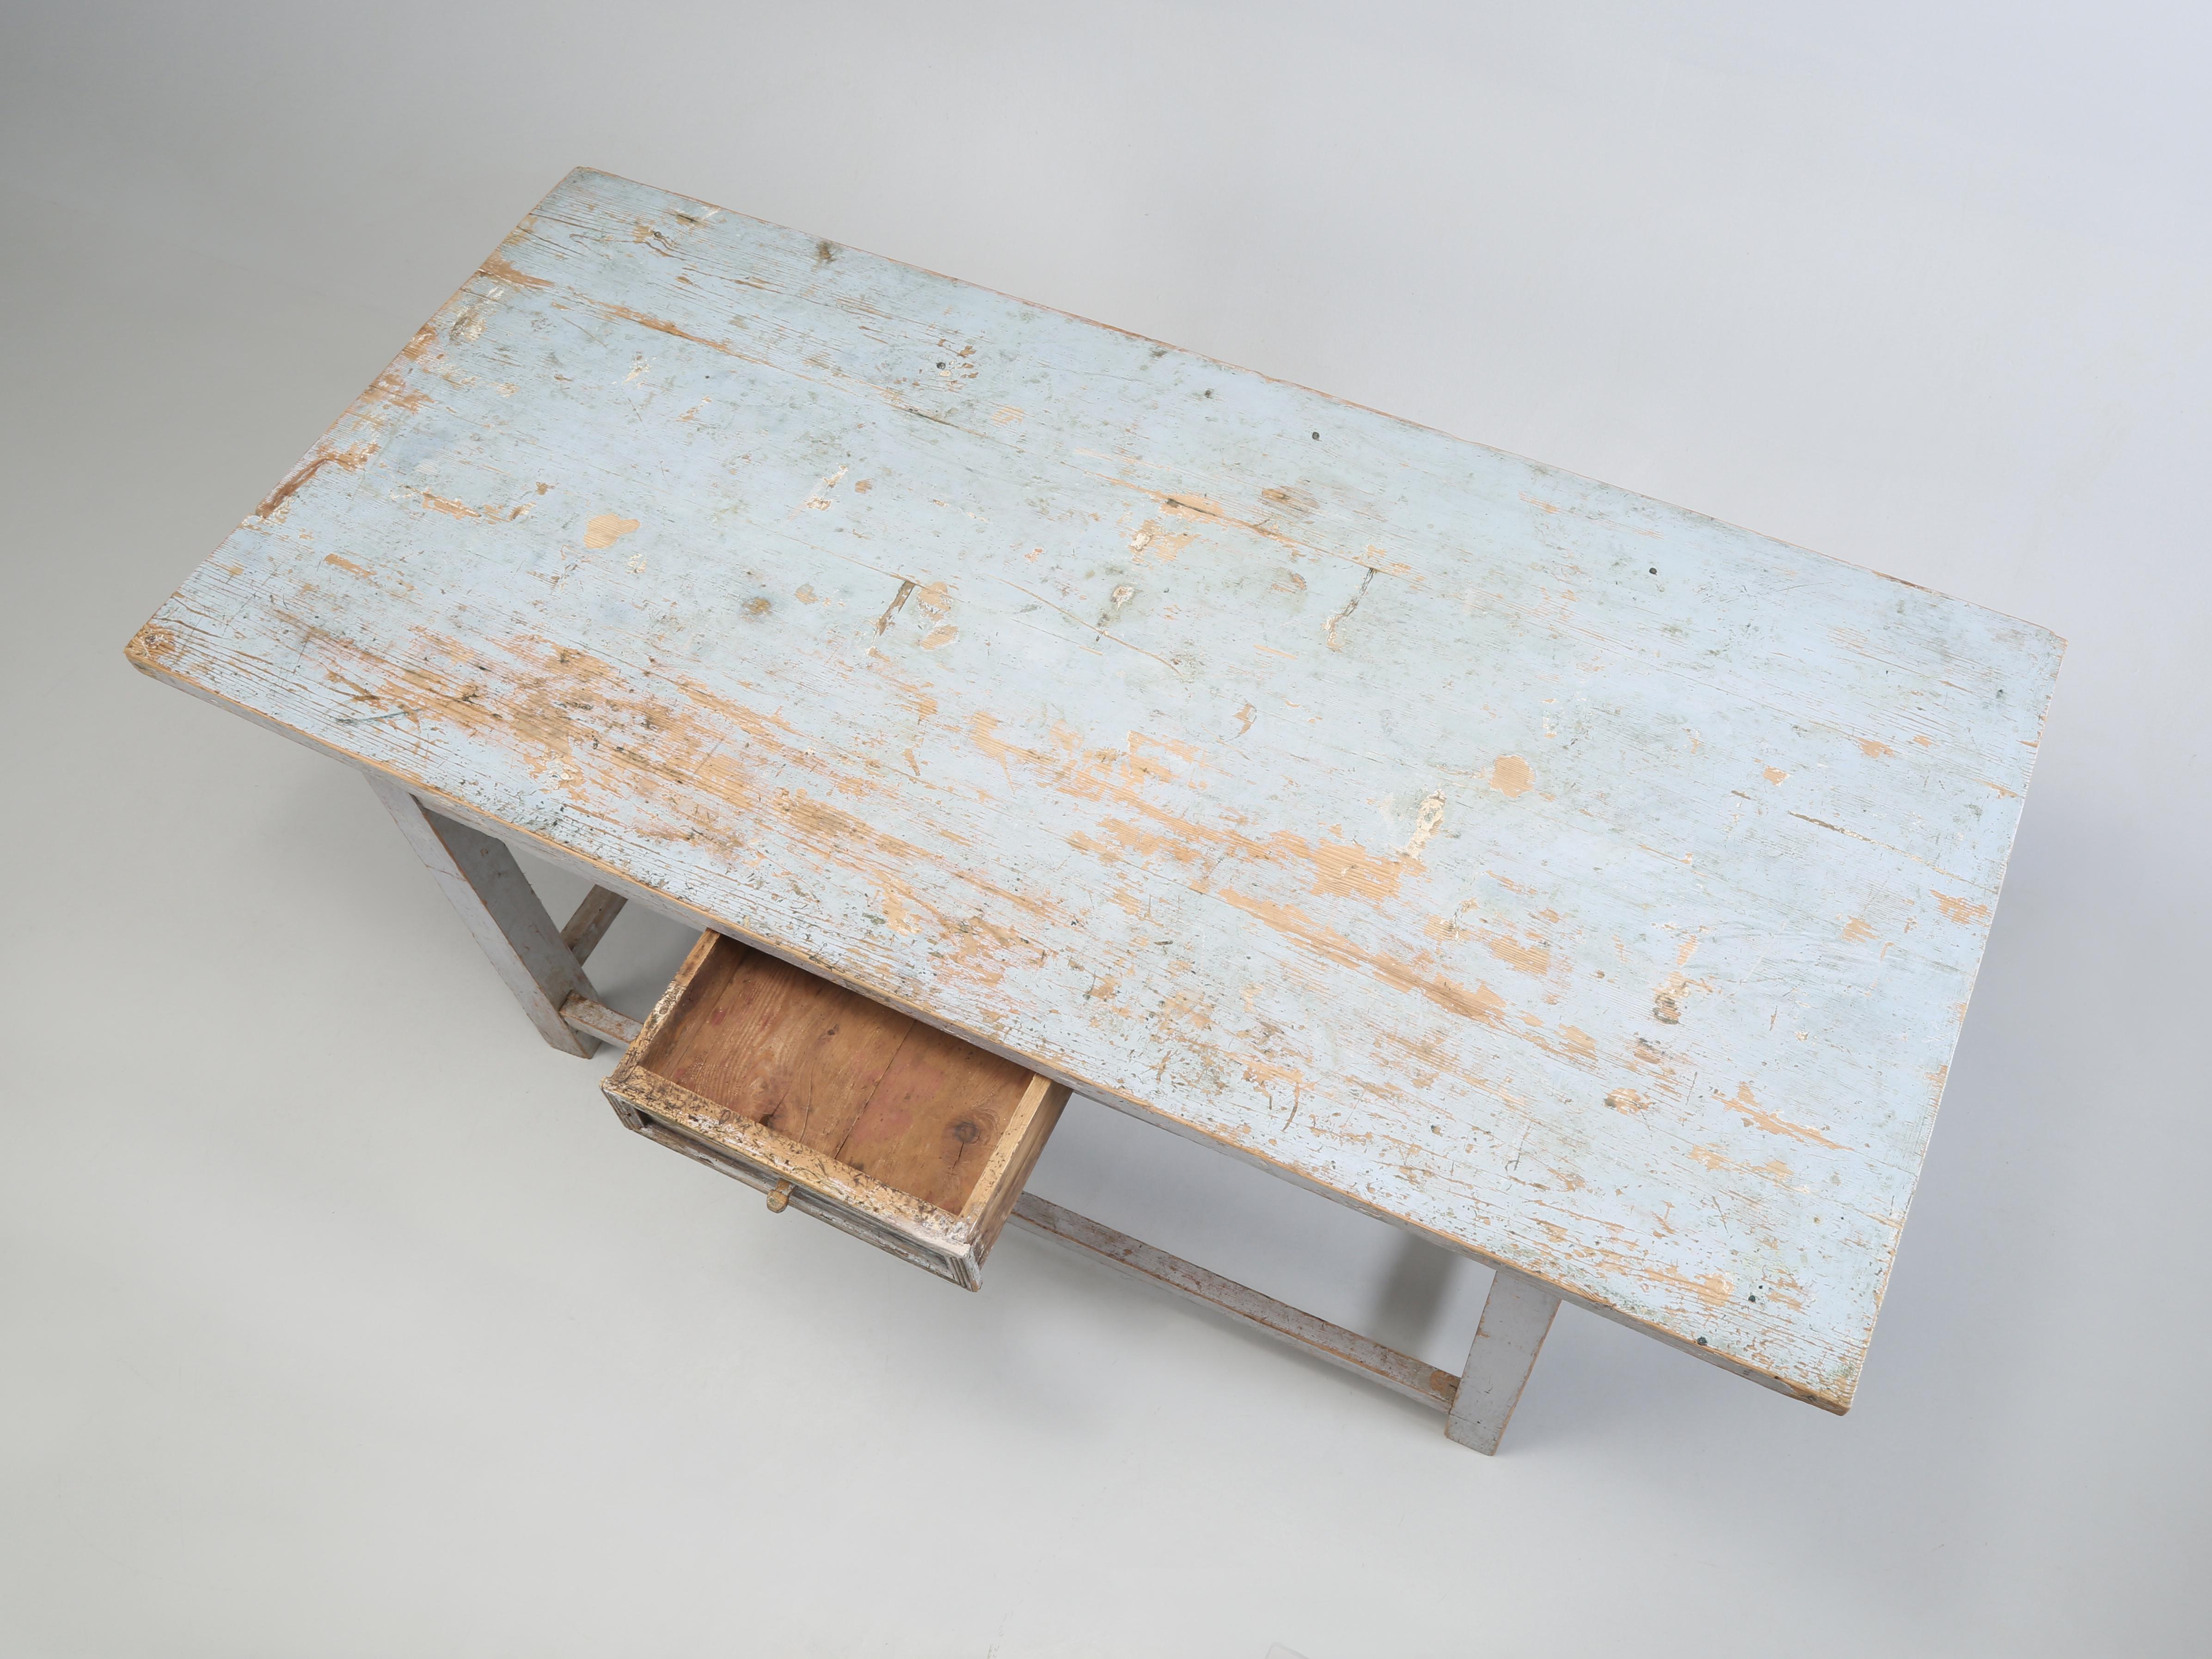 Antike schwedische bemalte Tabelle, die für eine große suchen Kücheninsel, Arbeitstisch, oder Crafts Tabelle machen würde. Die Suche nach einem alten, lackierten industriellen Arbeitstisch, der eine einzigartige Kücheninsel abgeben würde, ist eine